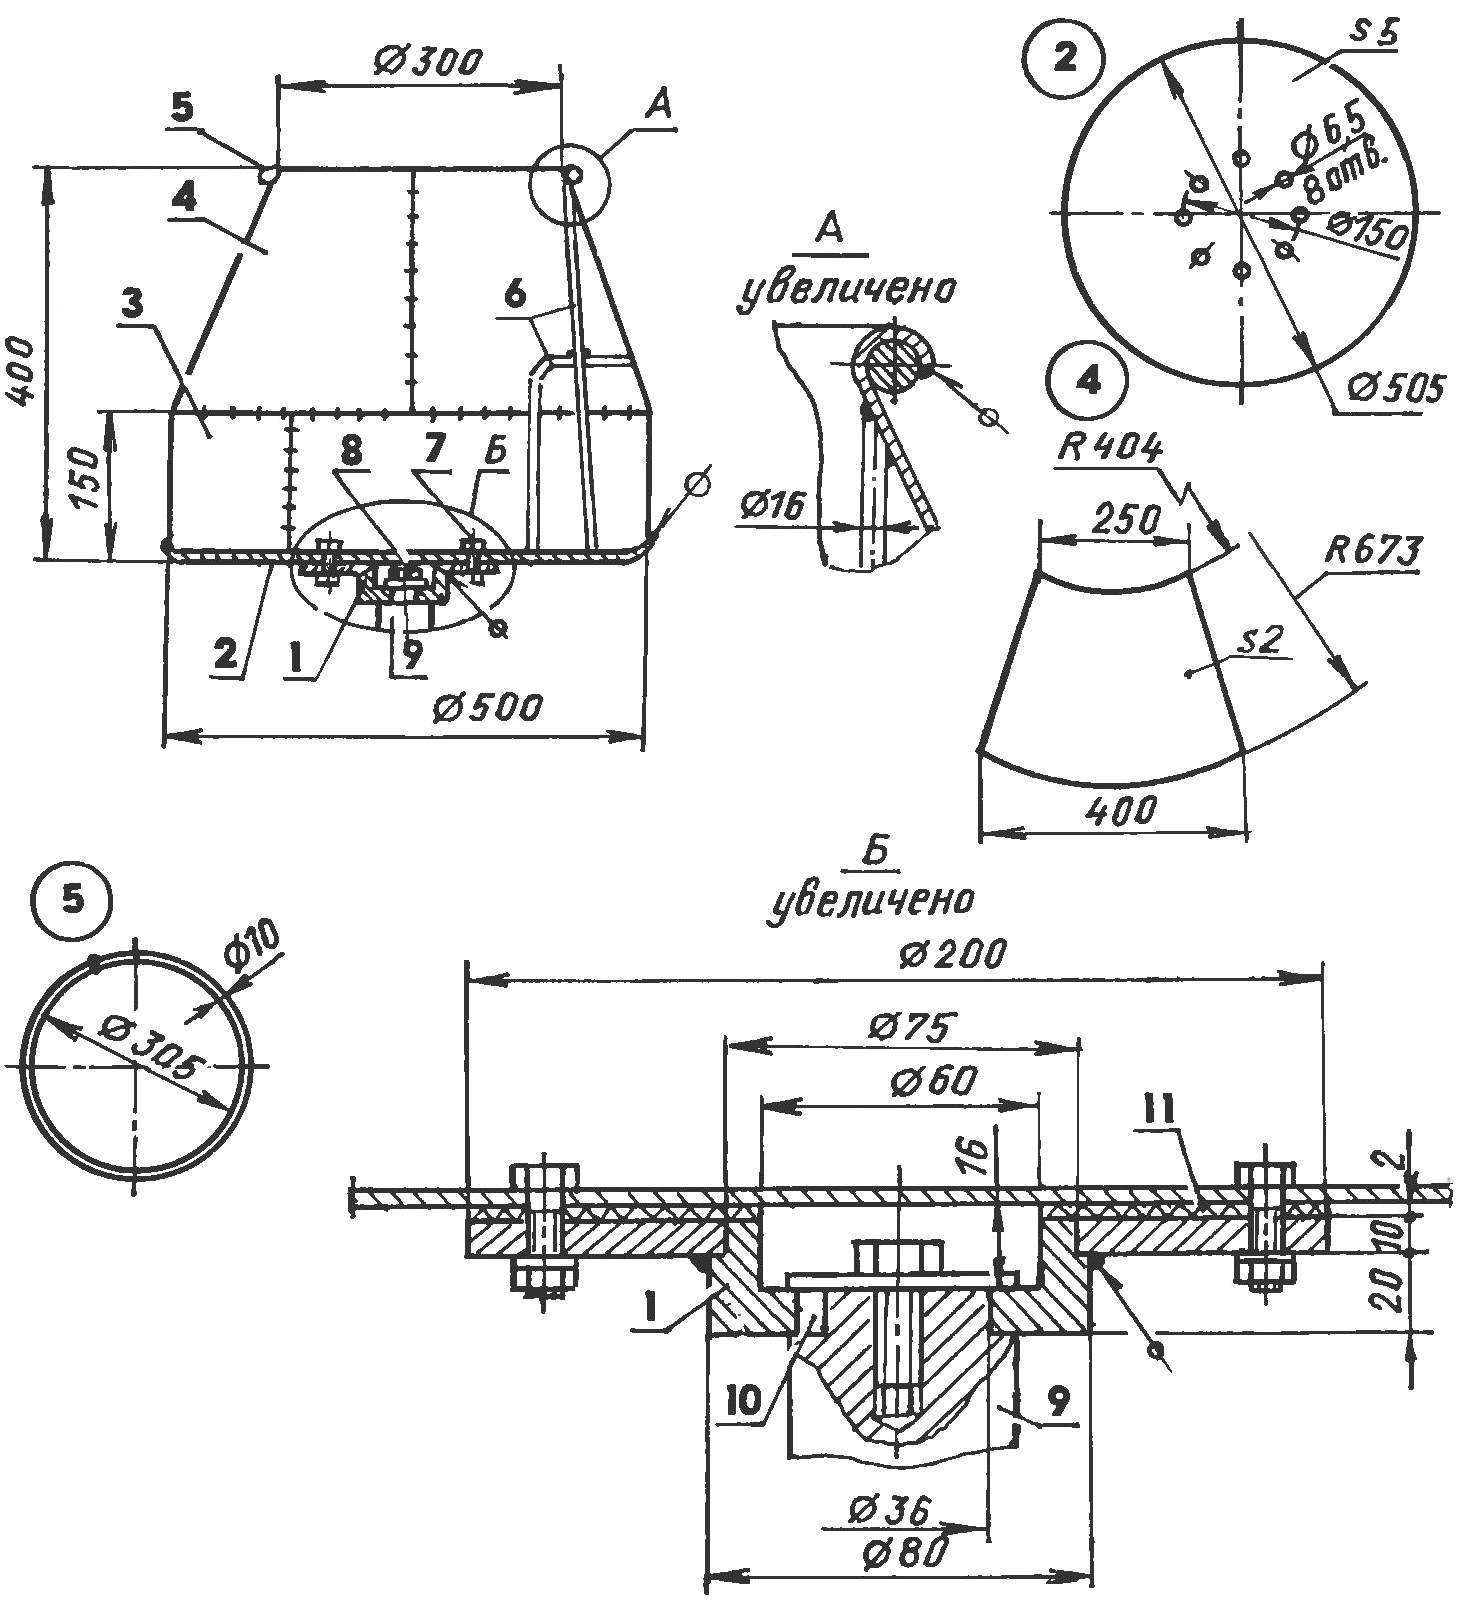 Fig. 2. Mixer